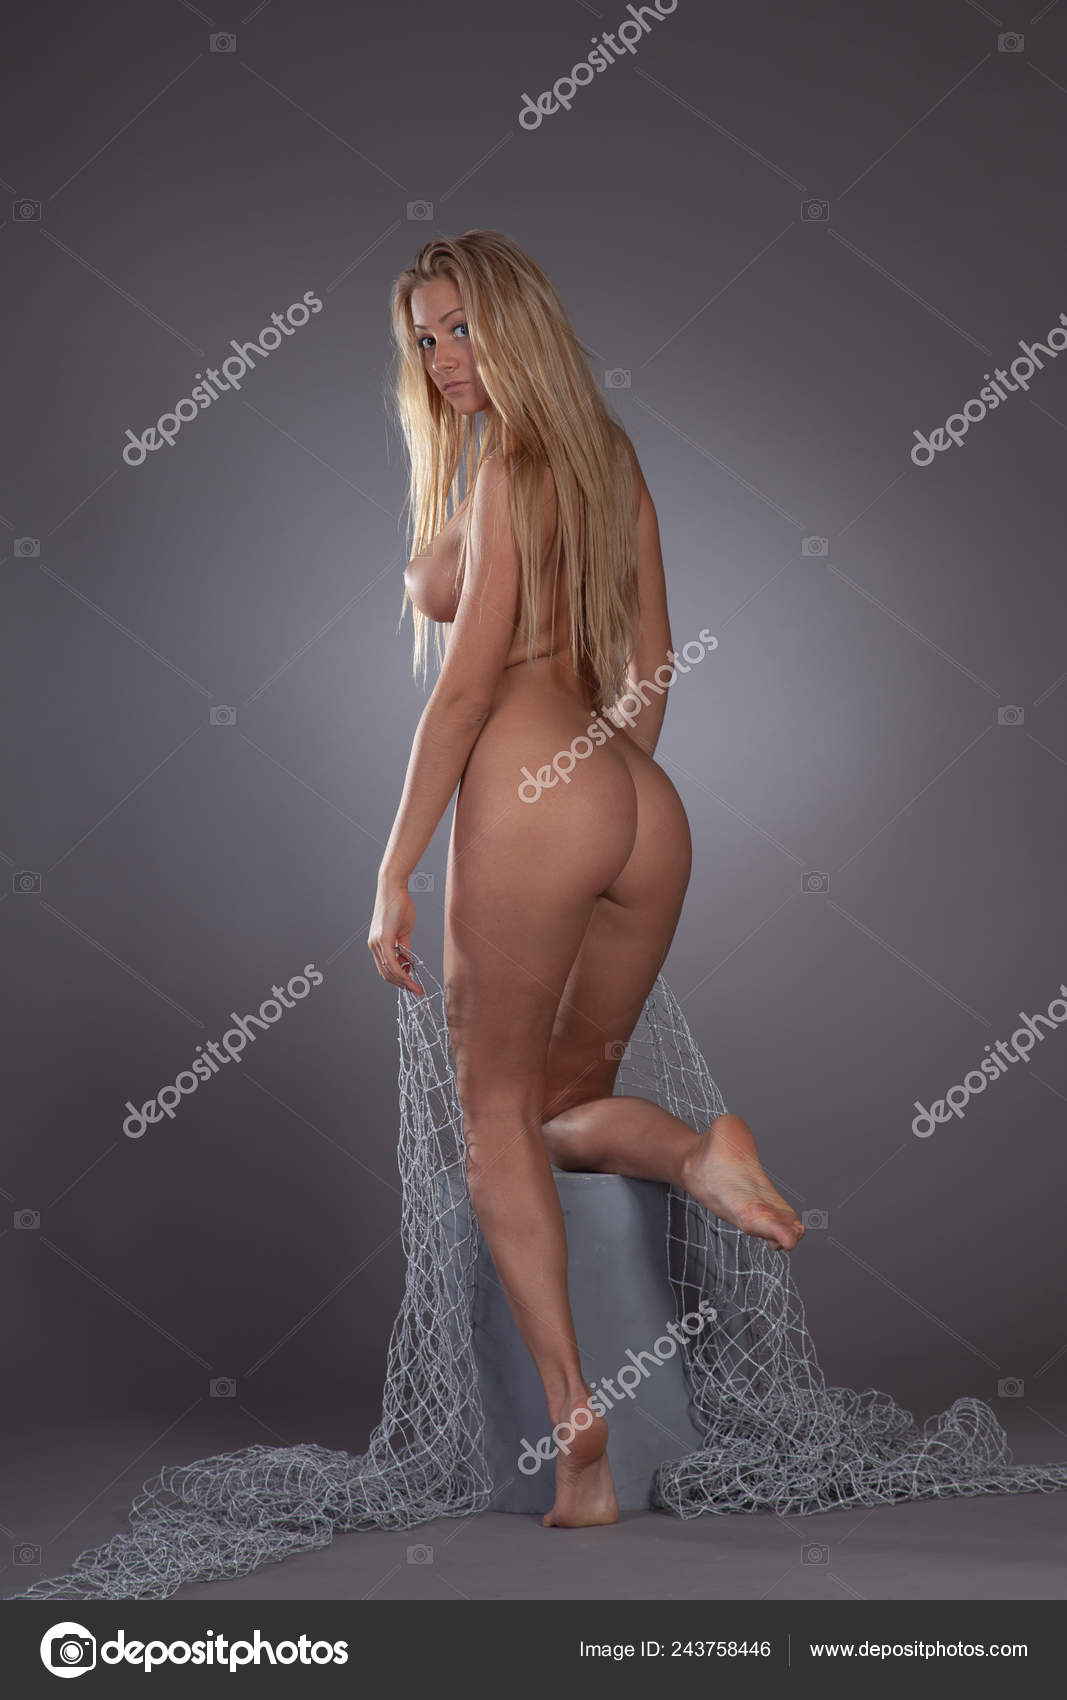 https://st4n.depositphotos.com/10086424/24375/i/1600/depositphotos_243758446-stock-photo-young-beautiful-girl-posing-nude.jpg